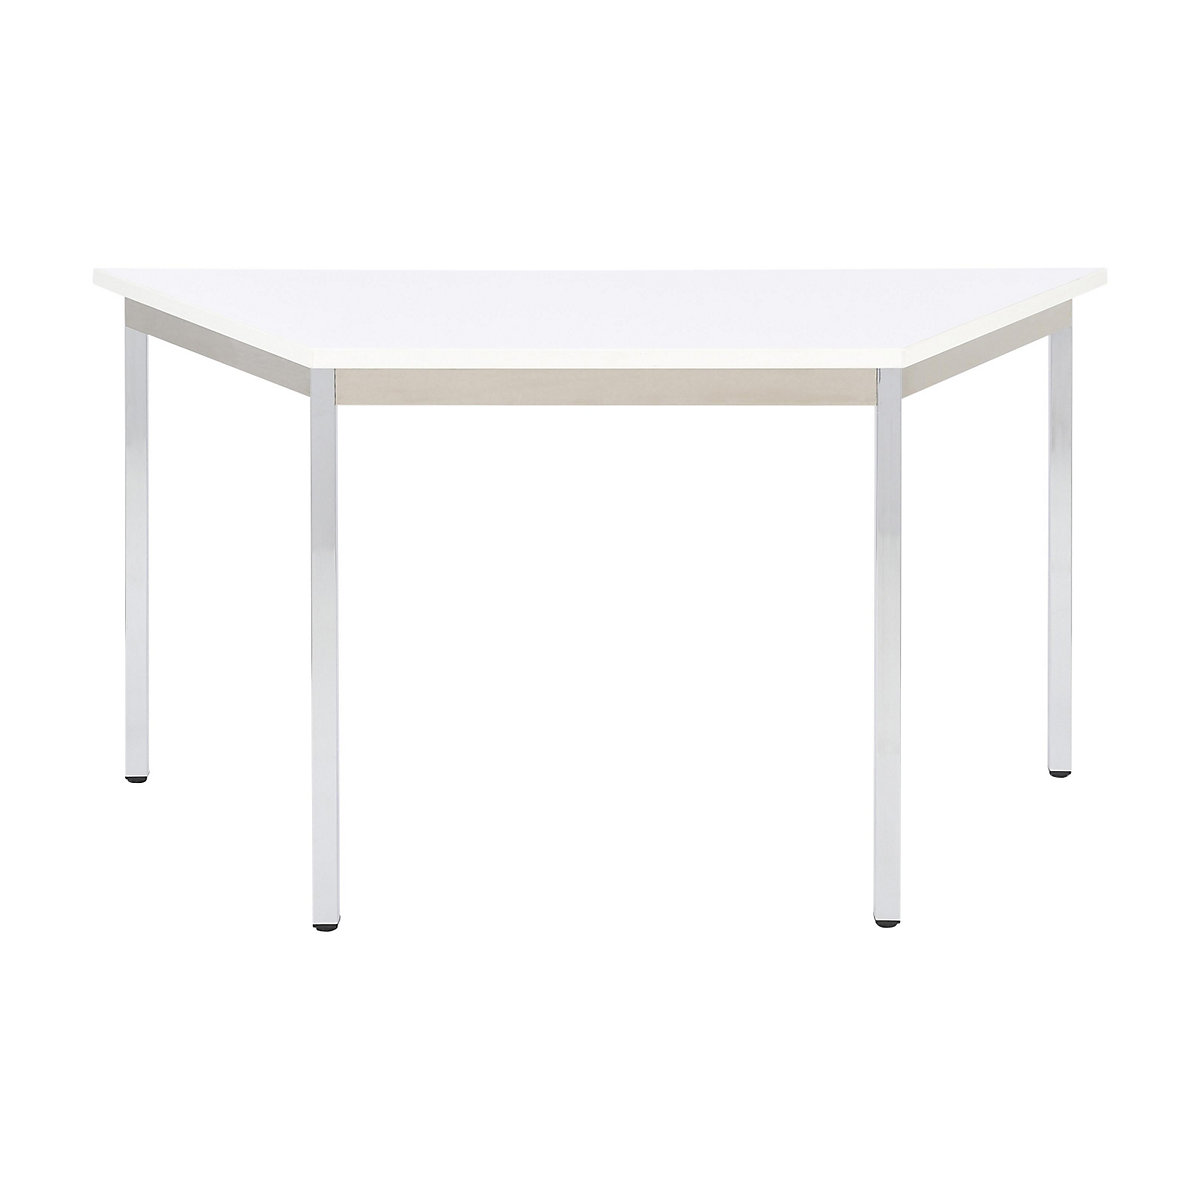 Višenamjenski stol – eurokraft basic, u obliku trapeza, VxŠxD 740 x 1200 x 600 mm, ploča u bijeloj boji, kromirano postolje-16